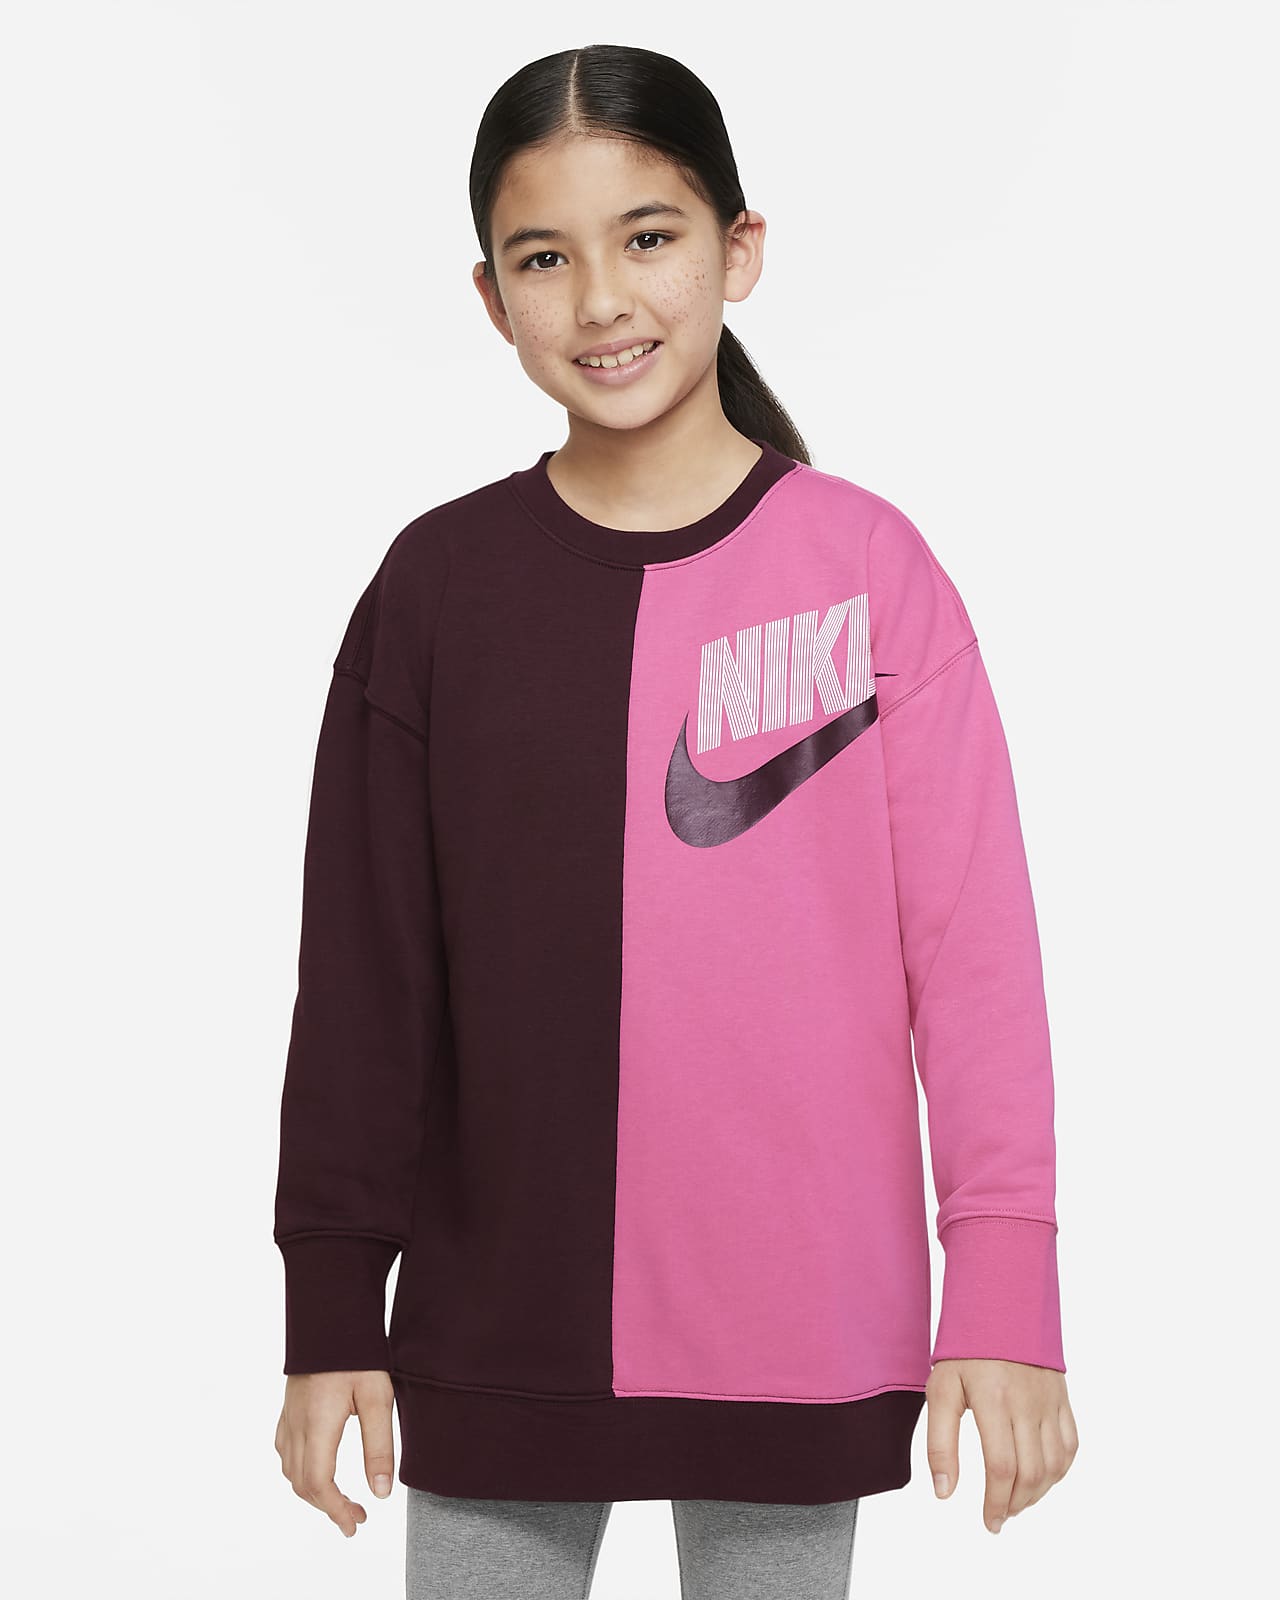 Nike Sportswear Tanz-Sweatshirt für ältere Kinder (Mädchen)